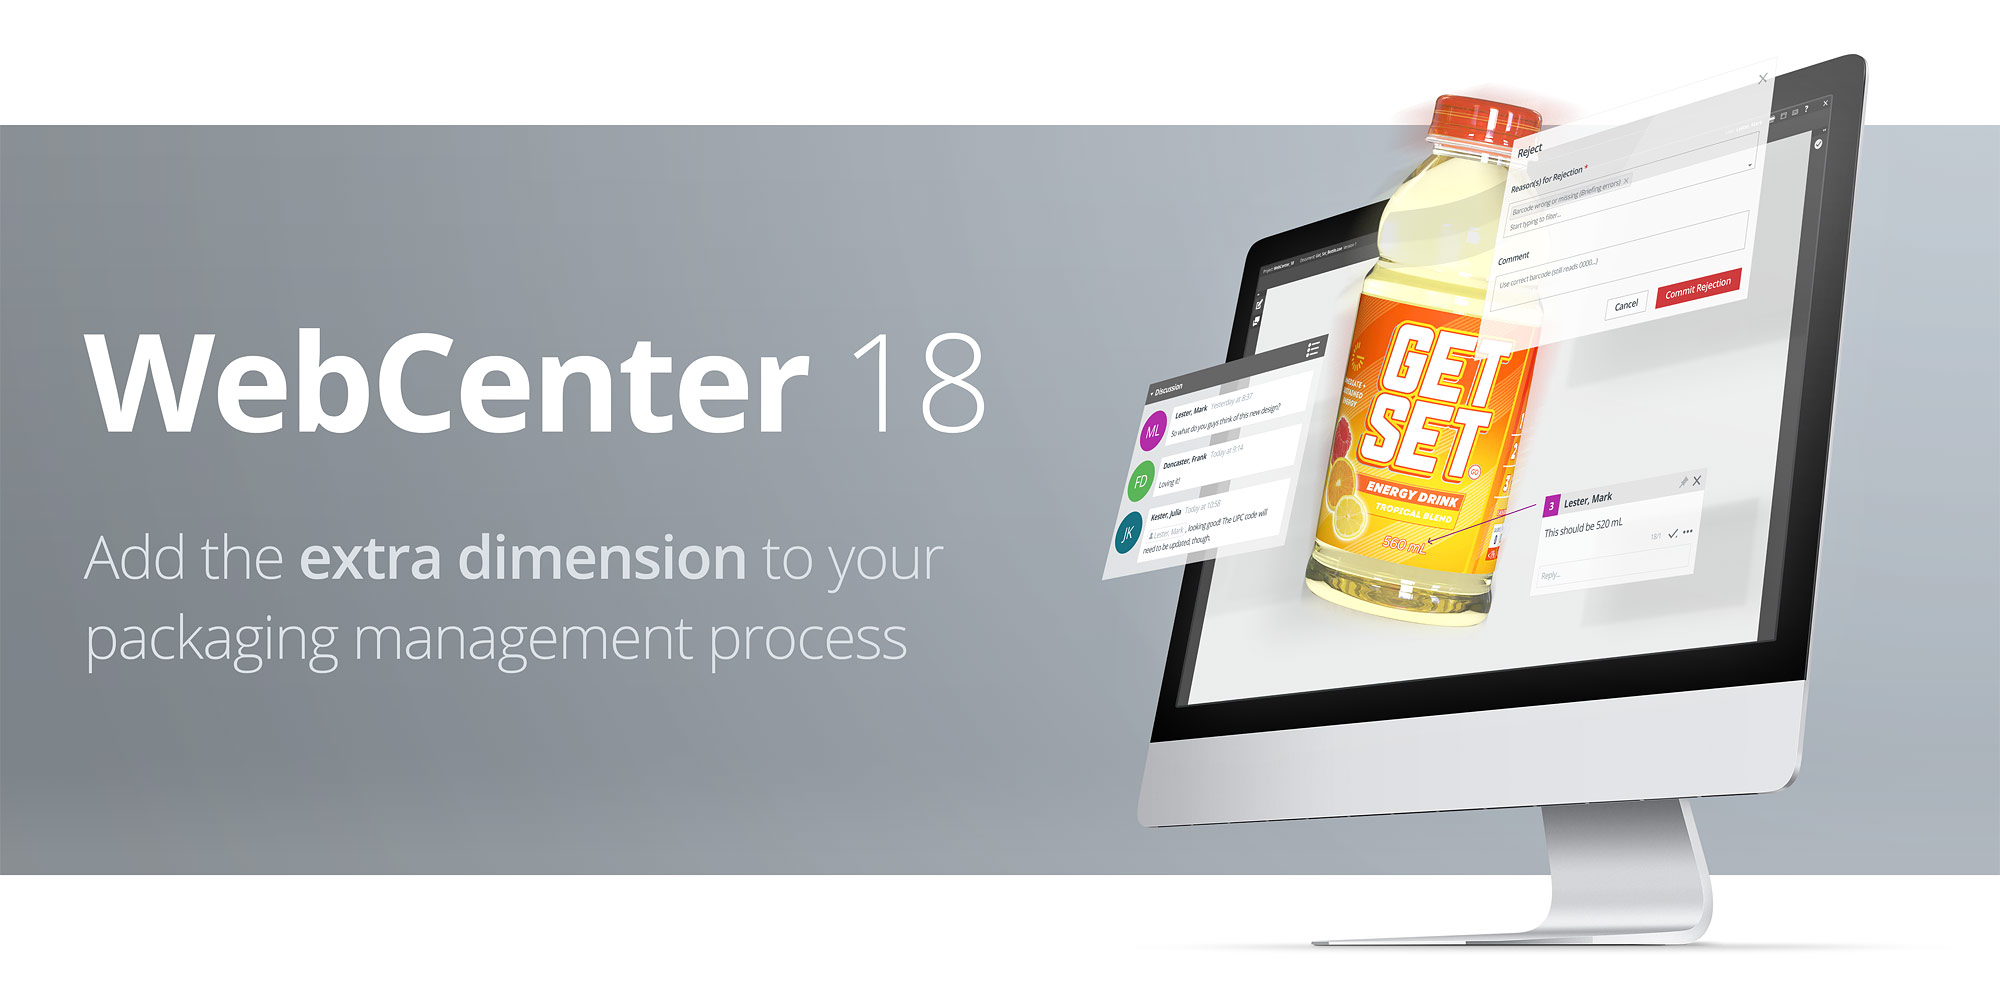 WebCenter 18 - Aggiungere una nuova dimensione alla gestione degli imballaggi